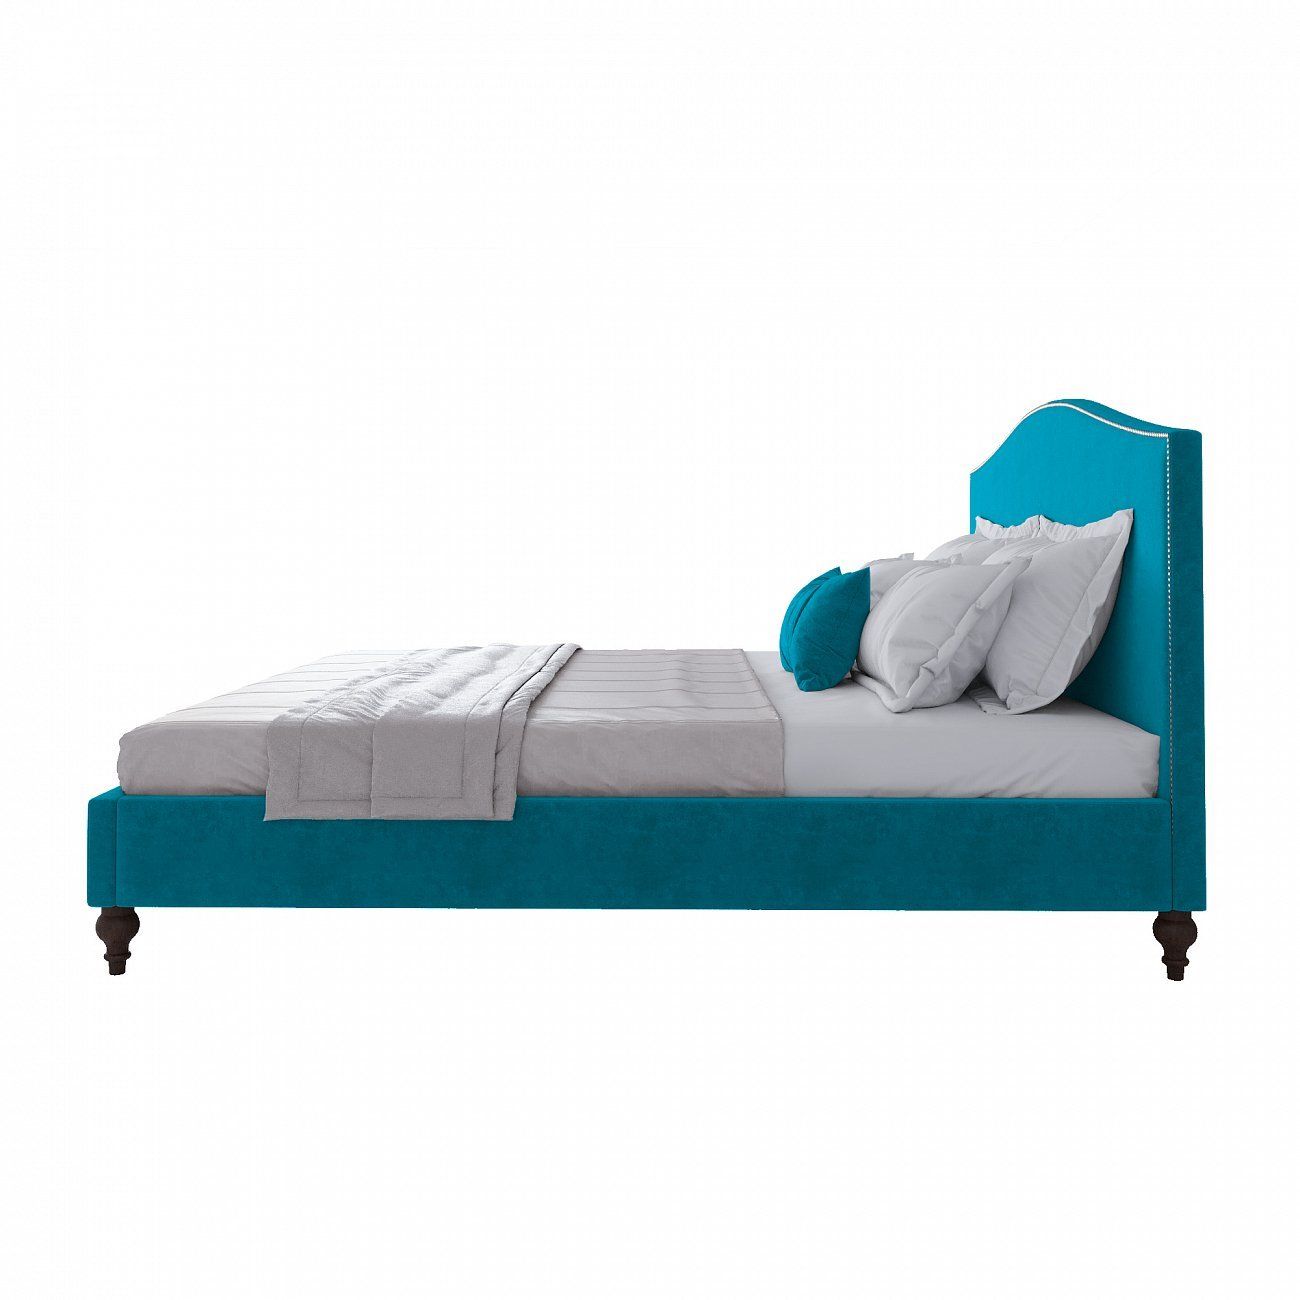 Double bed 180x200 cm blue Fleurie